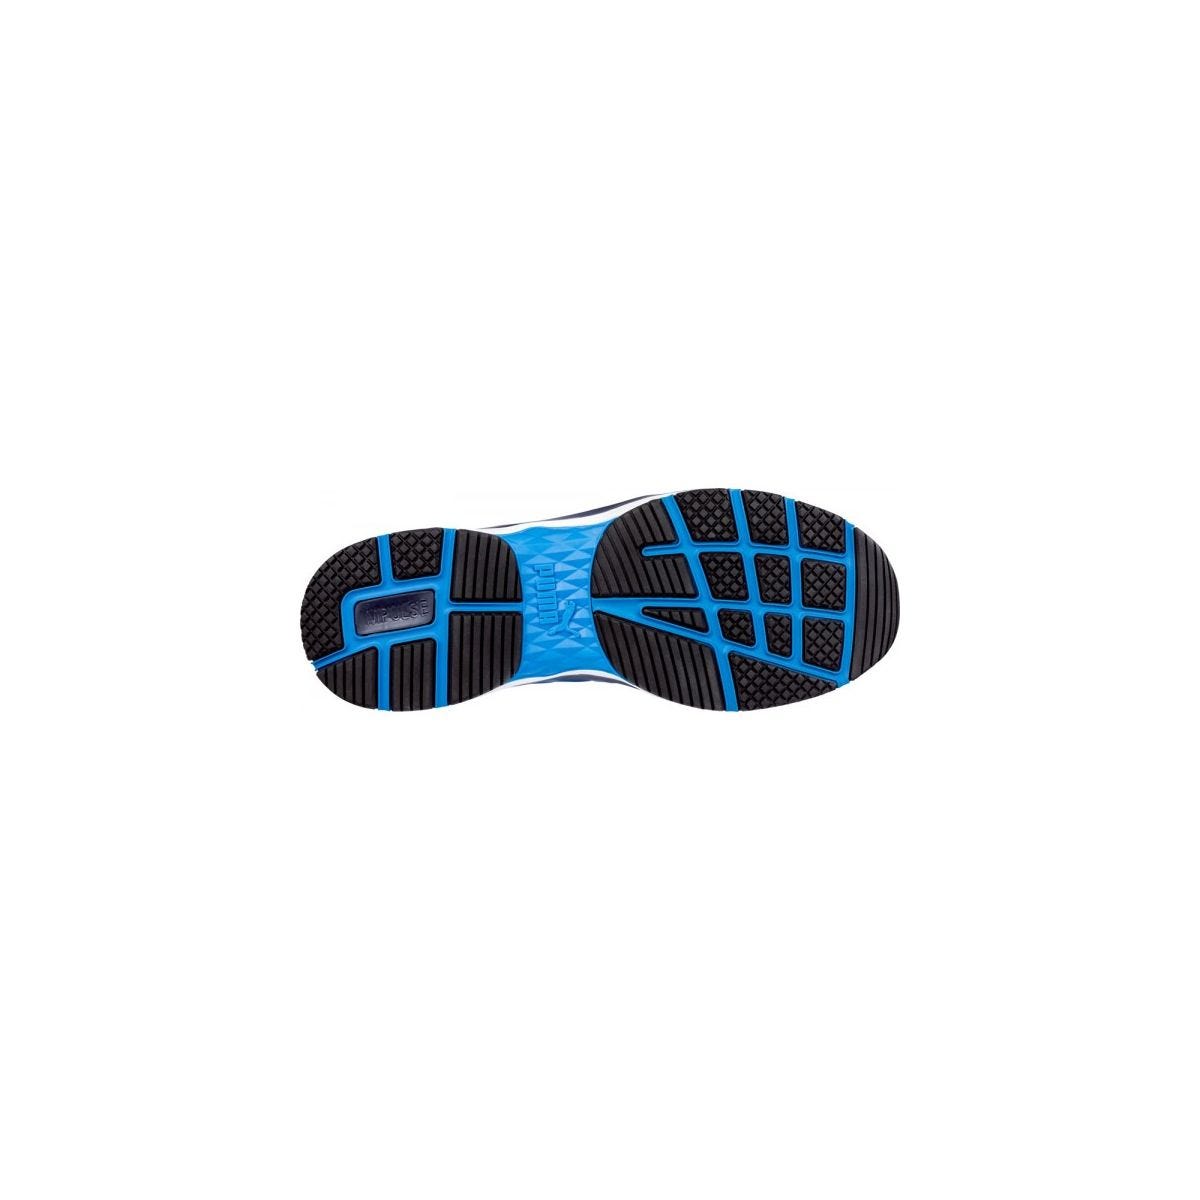 Chaussures de sécurité Velocity 2.0 Bleu Low S1P - Puma - Taille 42 4